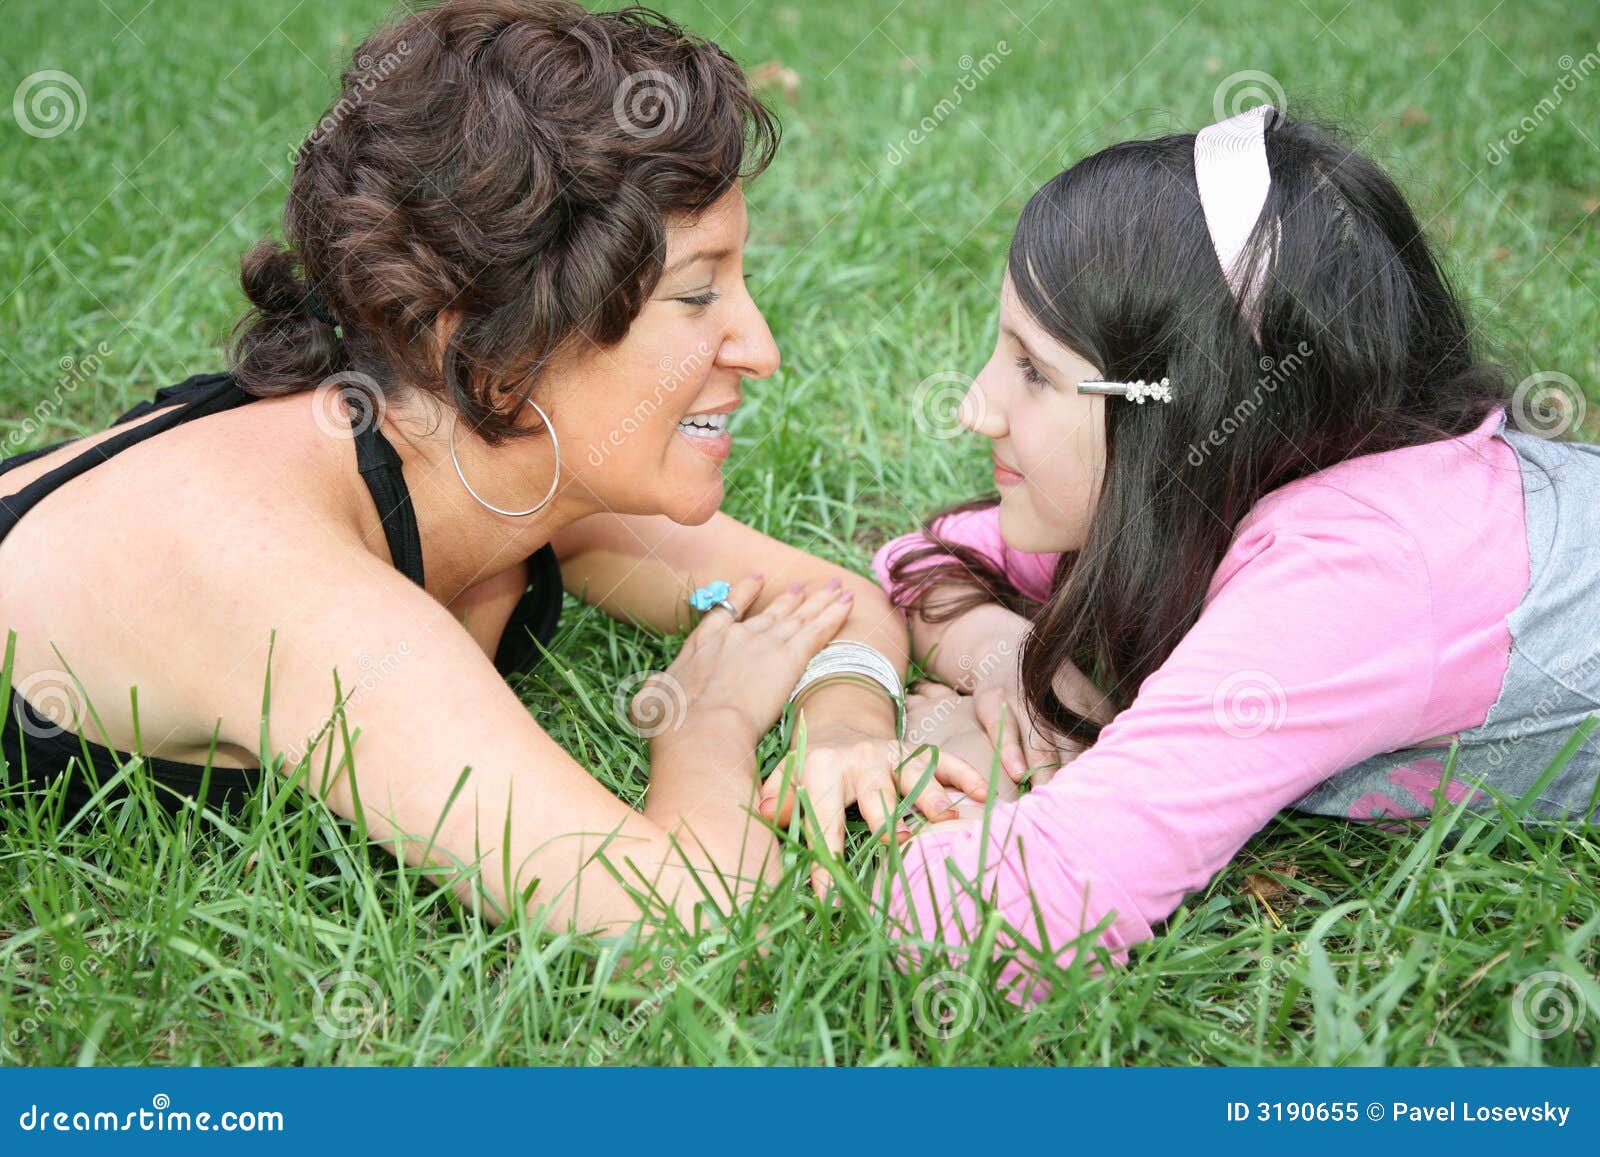 Лесбиянки мама дочка подруга. Мать и дочь на траве. Дочка лежит на маме. Мама и дочка лесбиянство. Фотосессия мама и дочь лизбиянка.